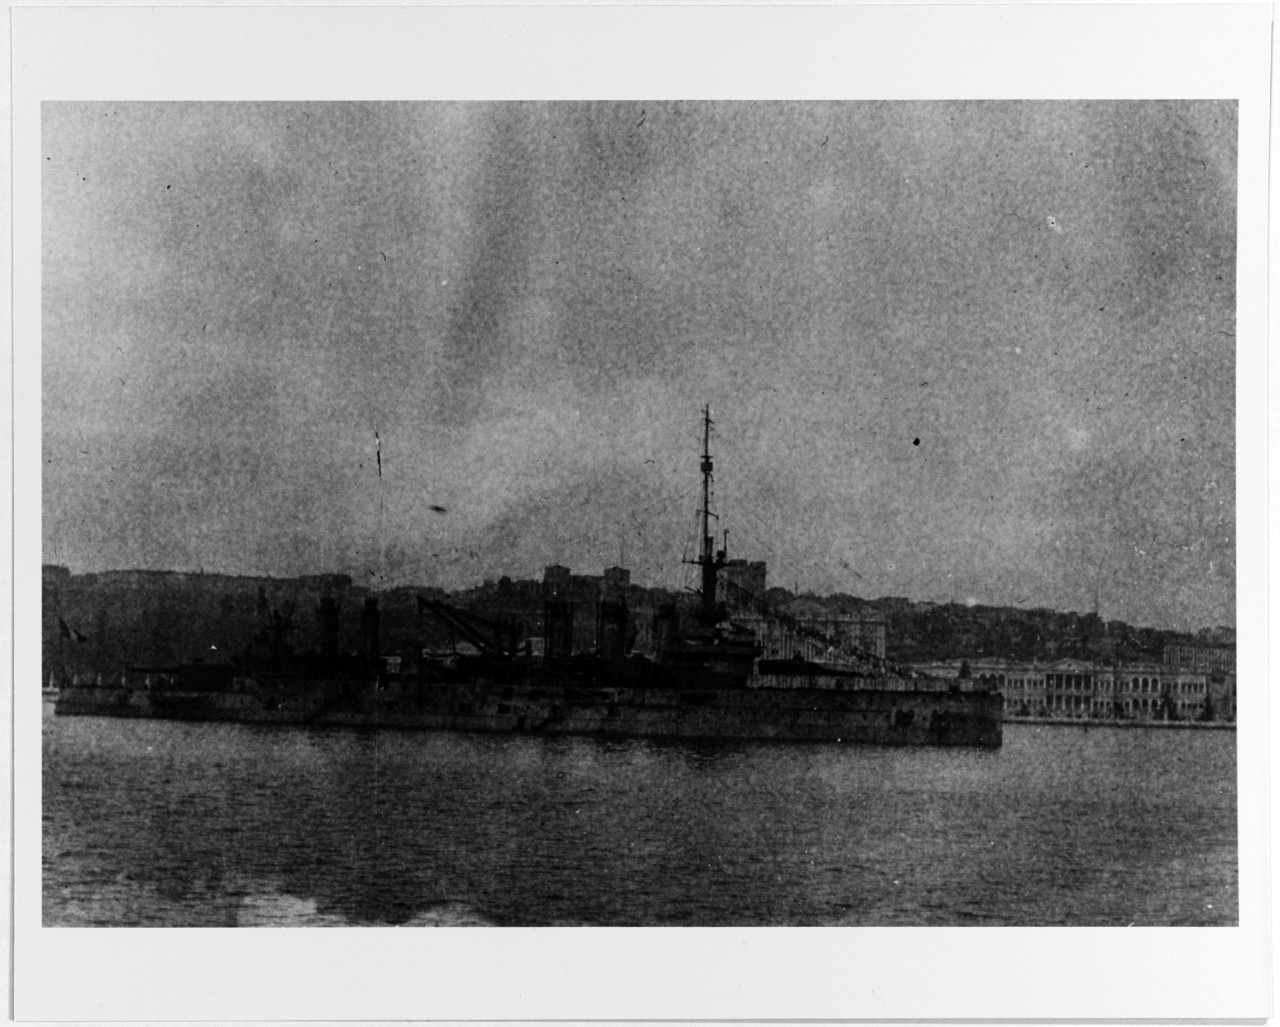 DONDORCET (French battleship, 1909-1942)